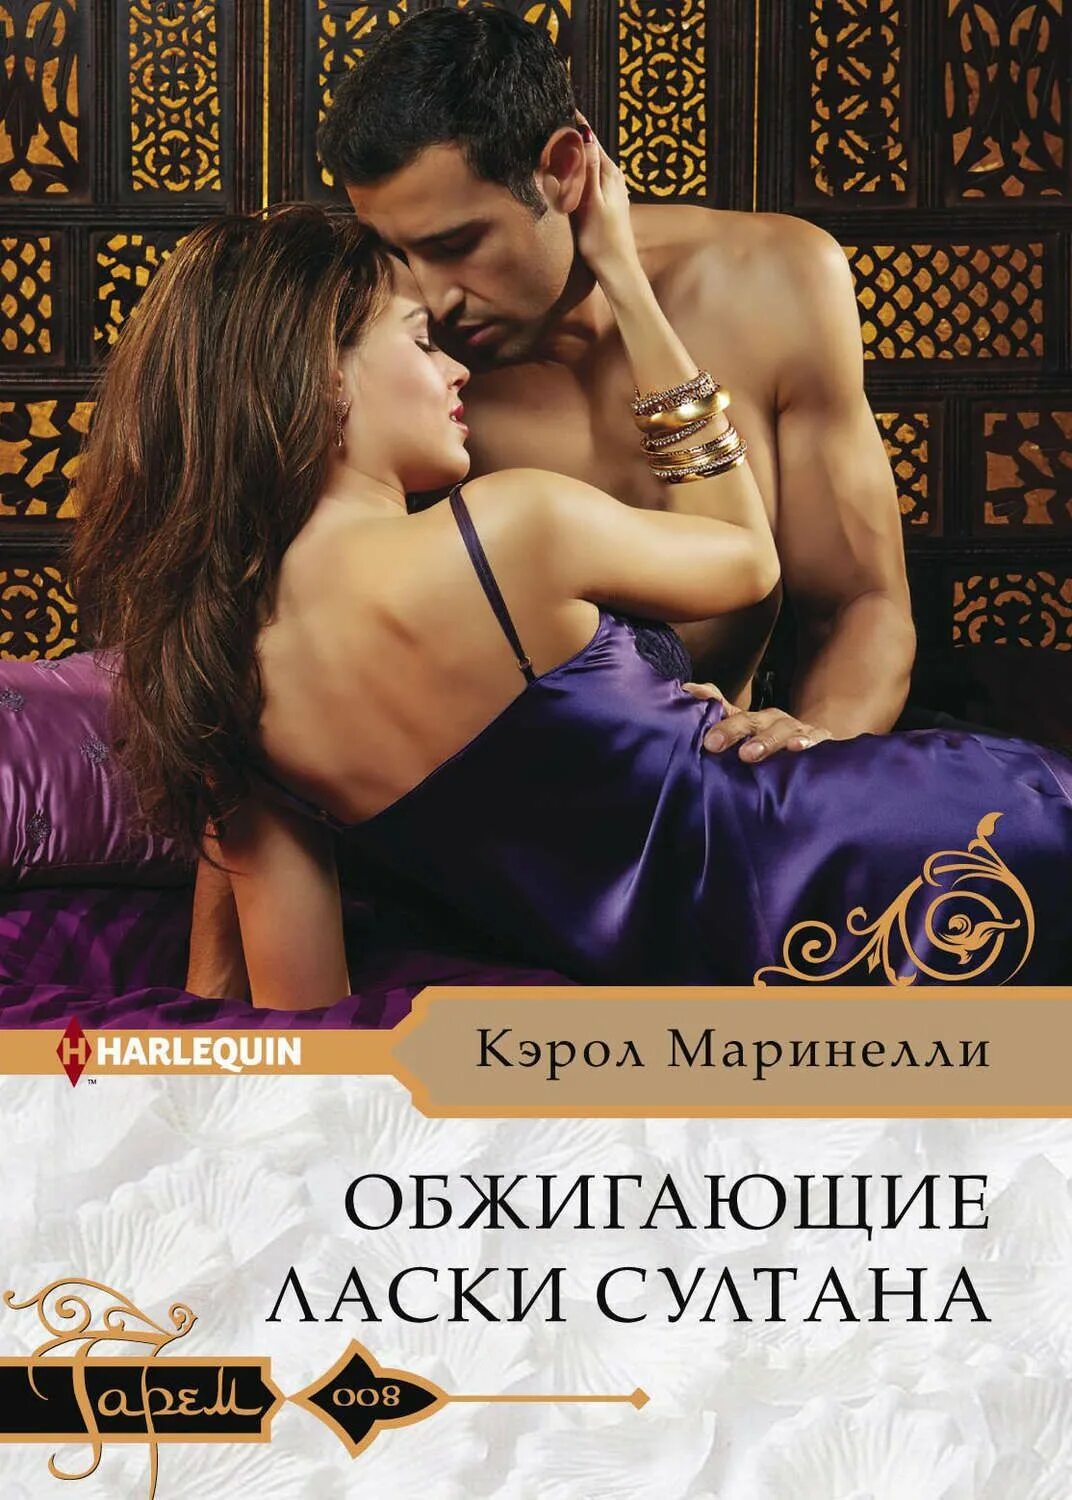 Читать короткую книгу про любовь. Обжигающие ласки Султана Кэрол Маринелли. Книга о любви. Романтические книги для женщин.